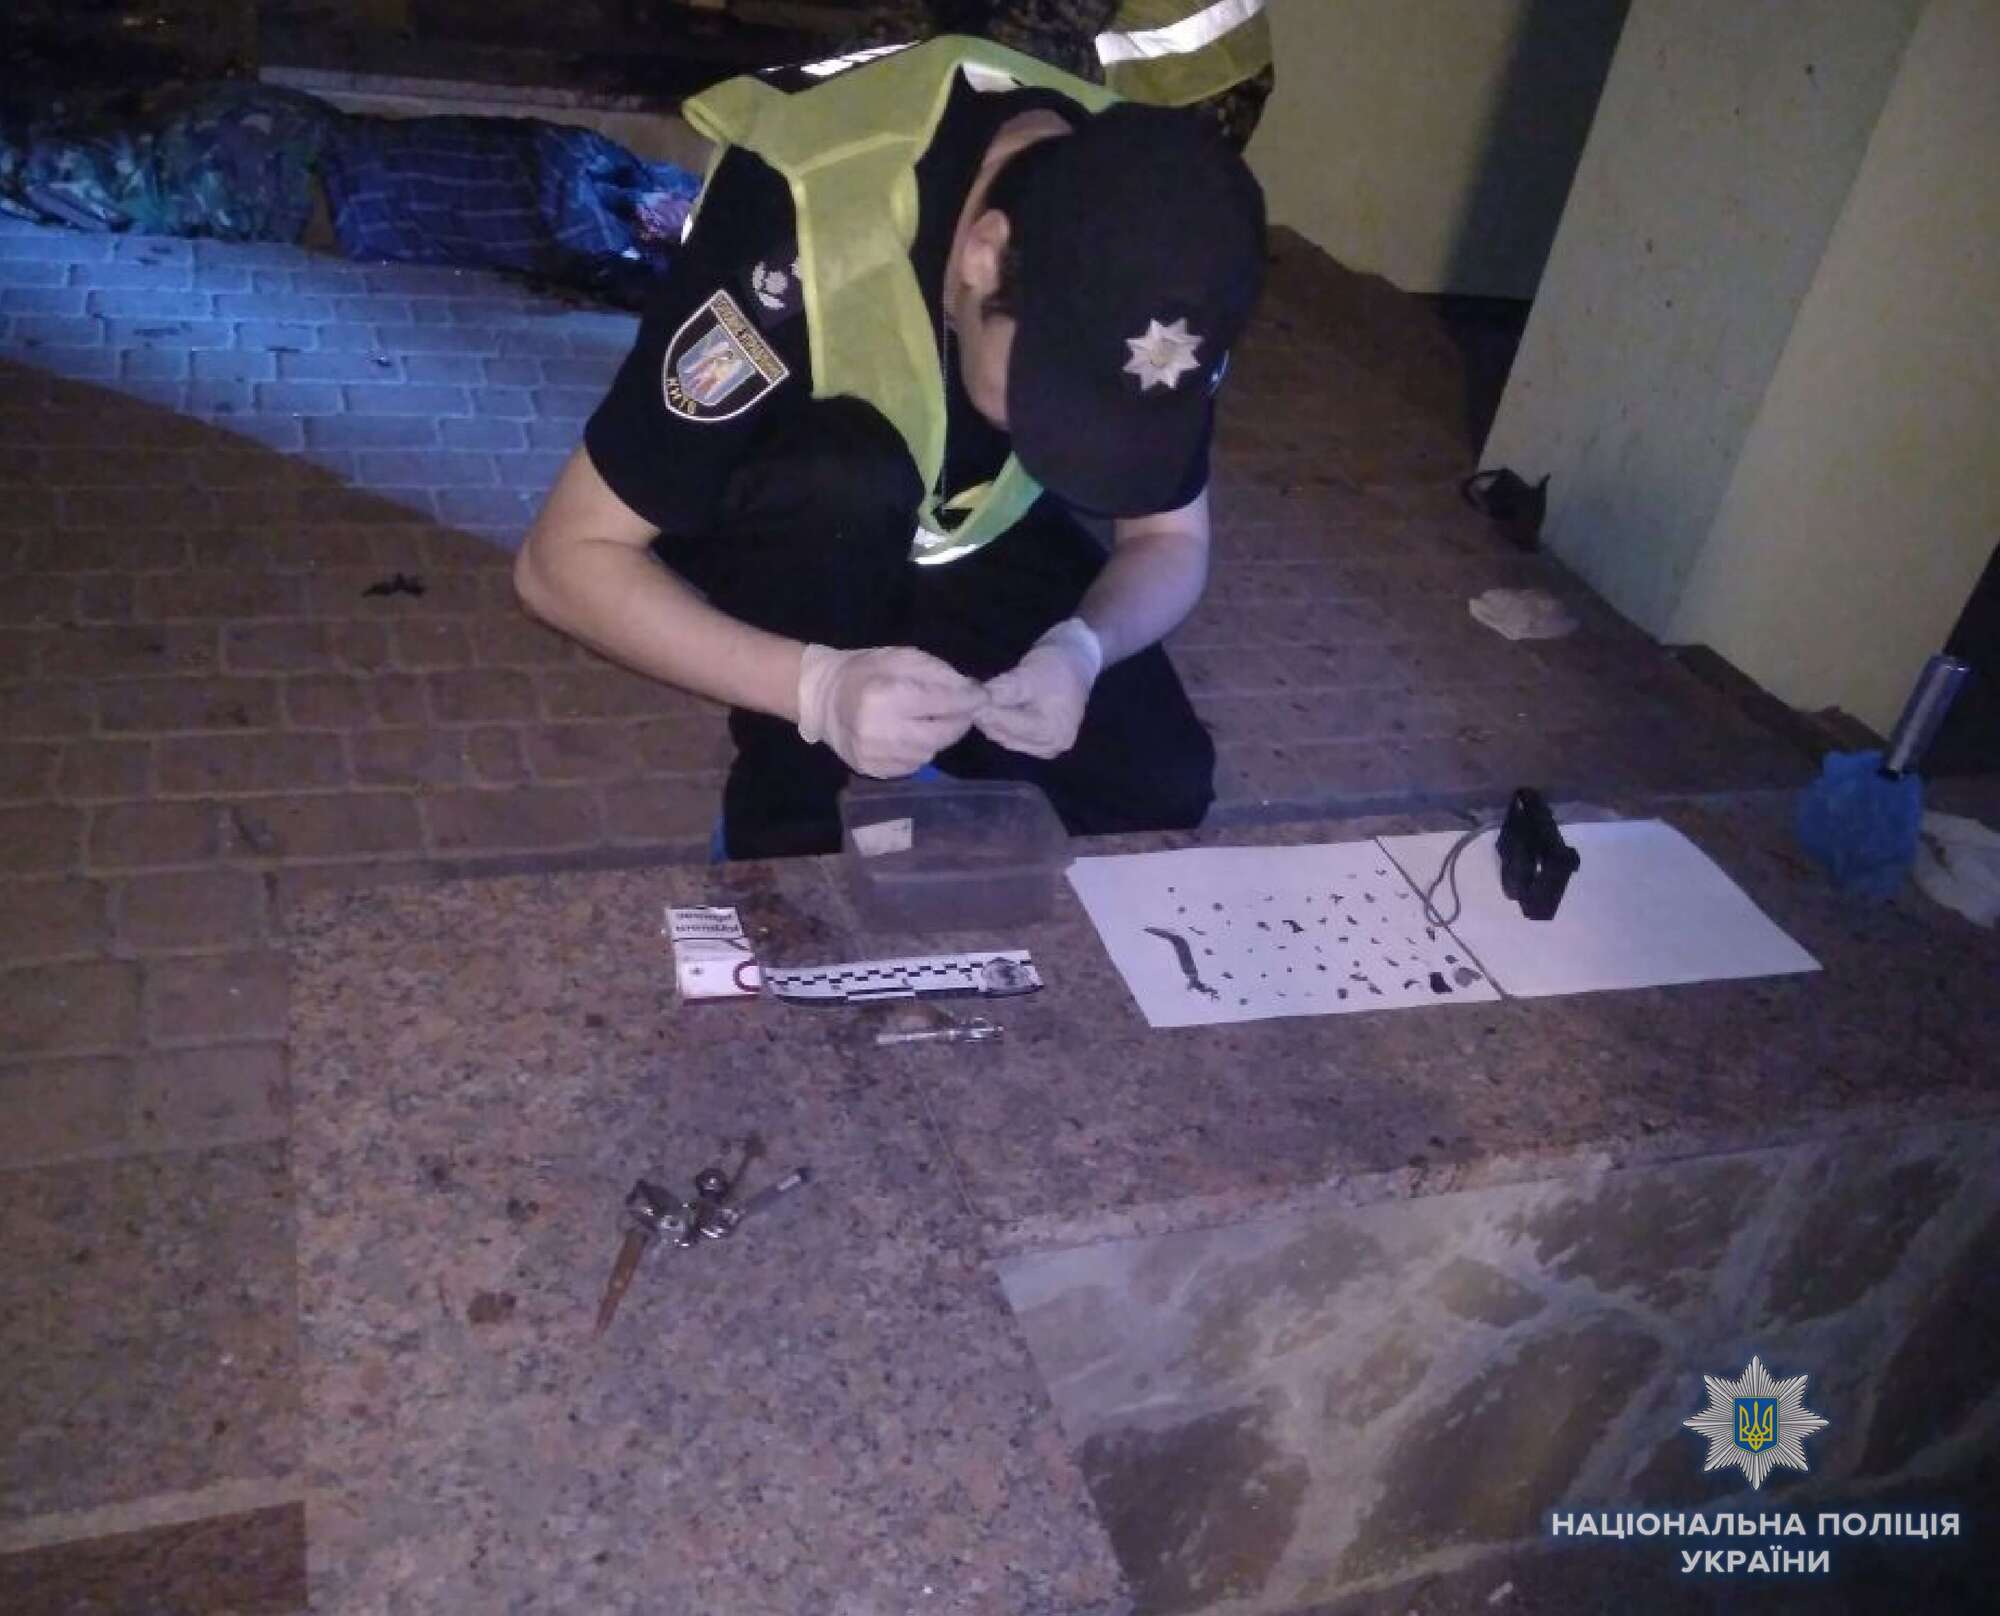 Підірвав себе сам: в поліції розповіли деталі ПП в Києві